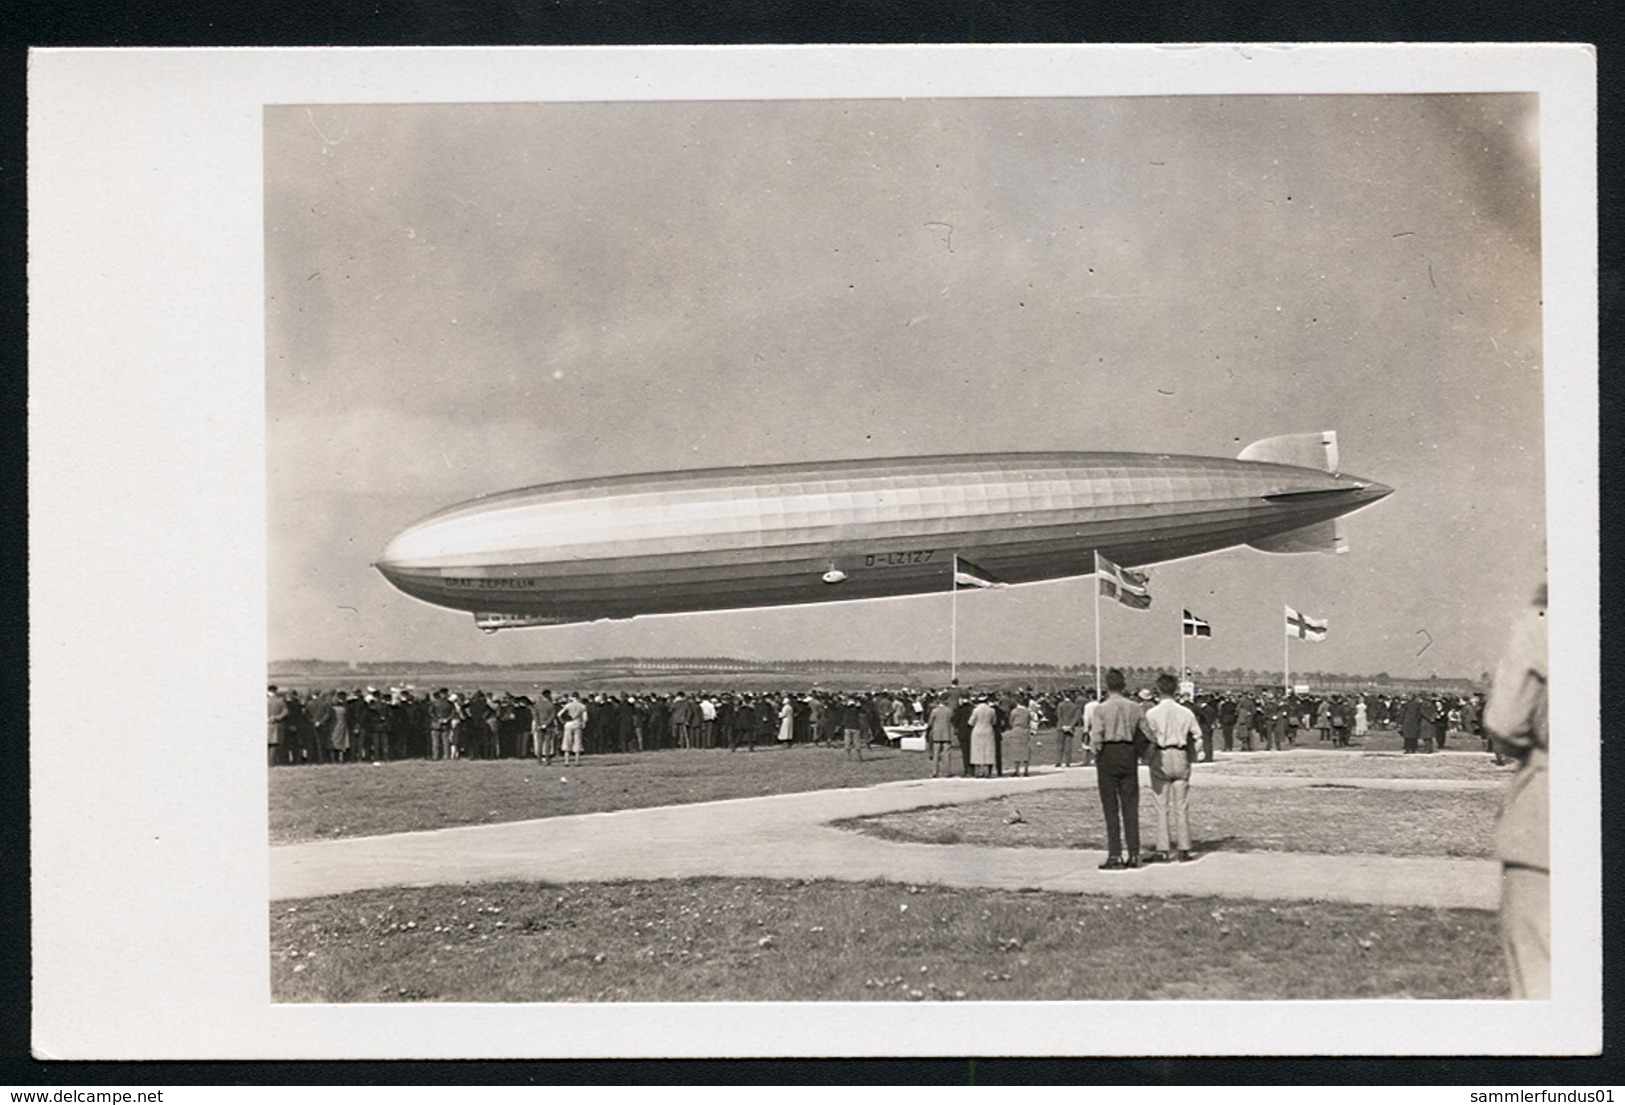 Foto AK/CP  Graf Zeppelin Luftschiff  LZ 127  Landung   Ungel/uncirc.1930er  Erhaltung/Cond. 2  Nr. 00625 - Dirigibili